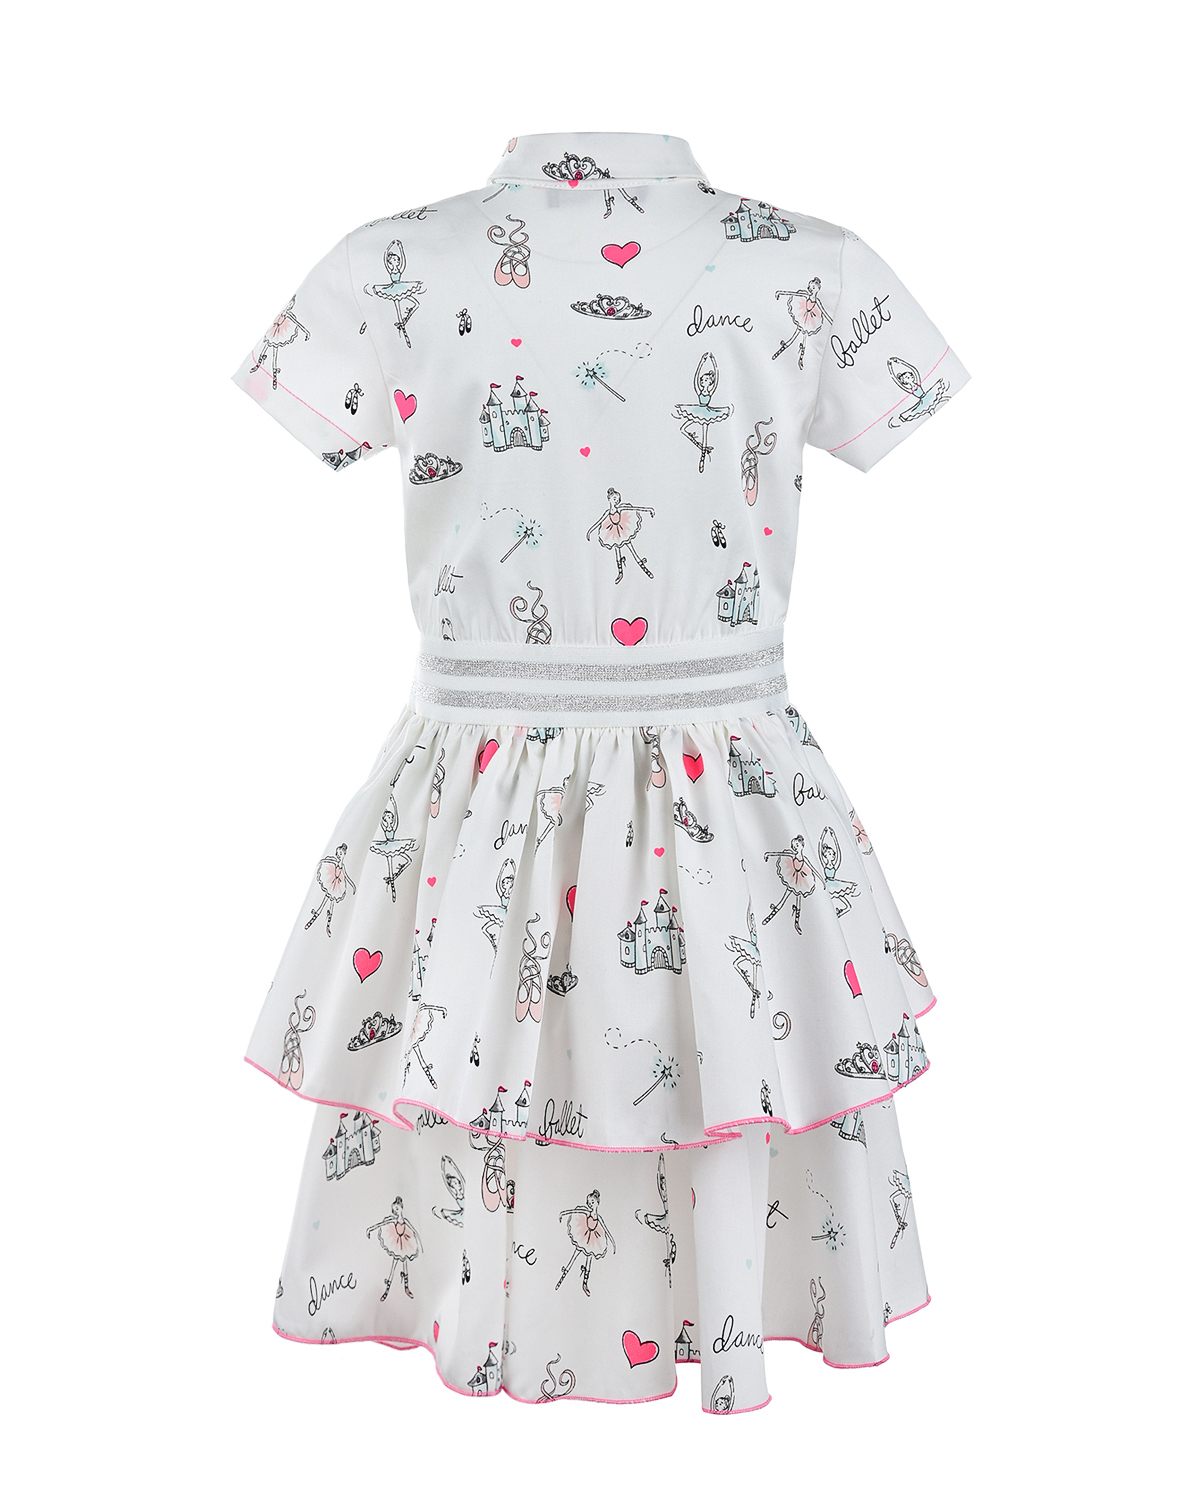 Платье-рубашка с принтом "балерины" Dan Maralex детское, размер 98, цвет мультиколор - фото 2